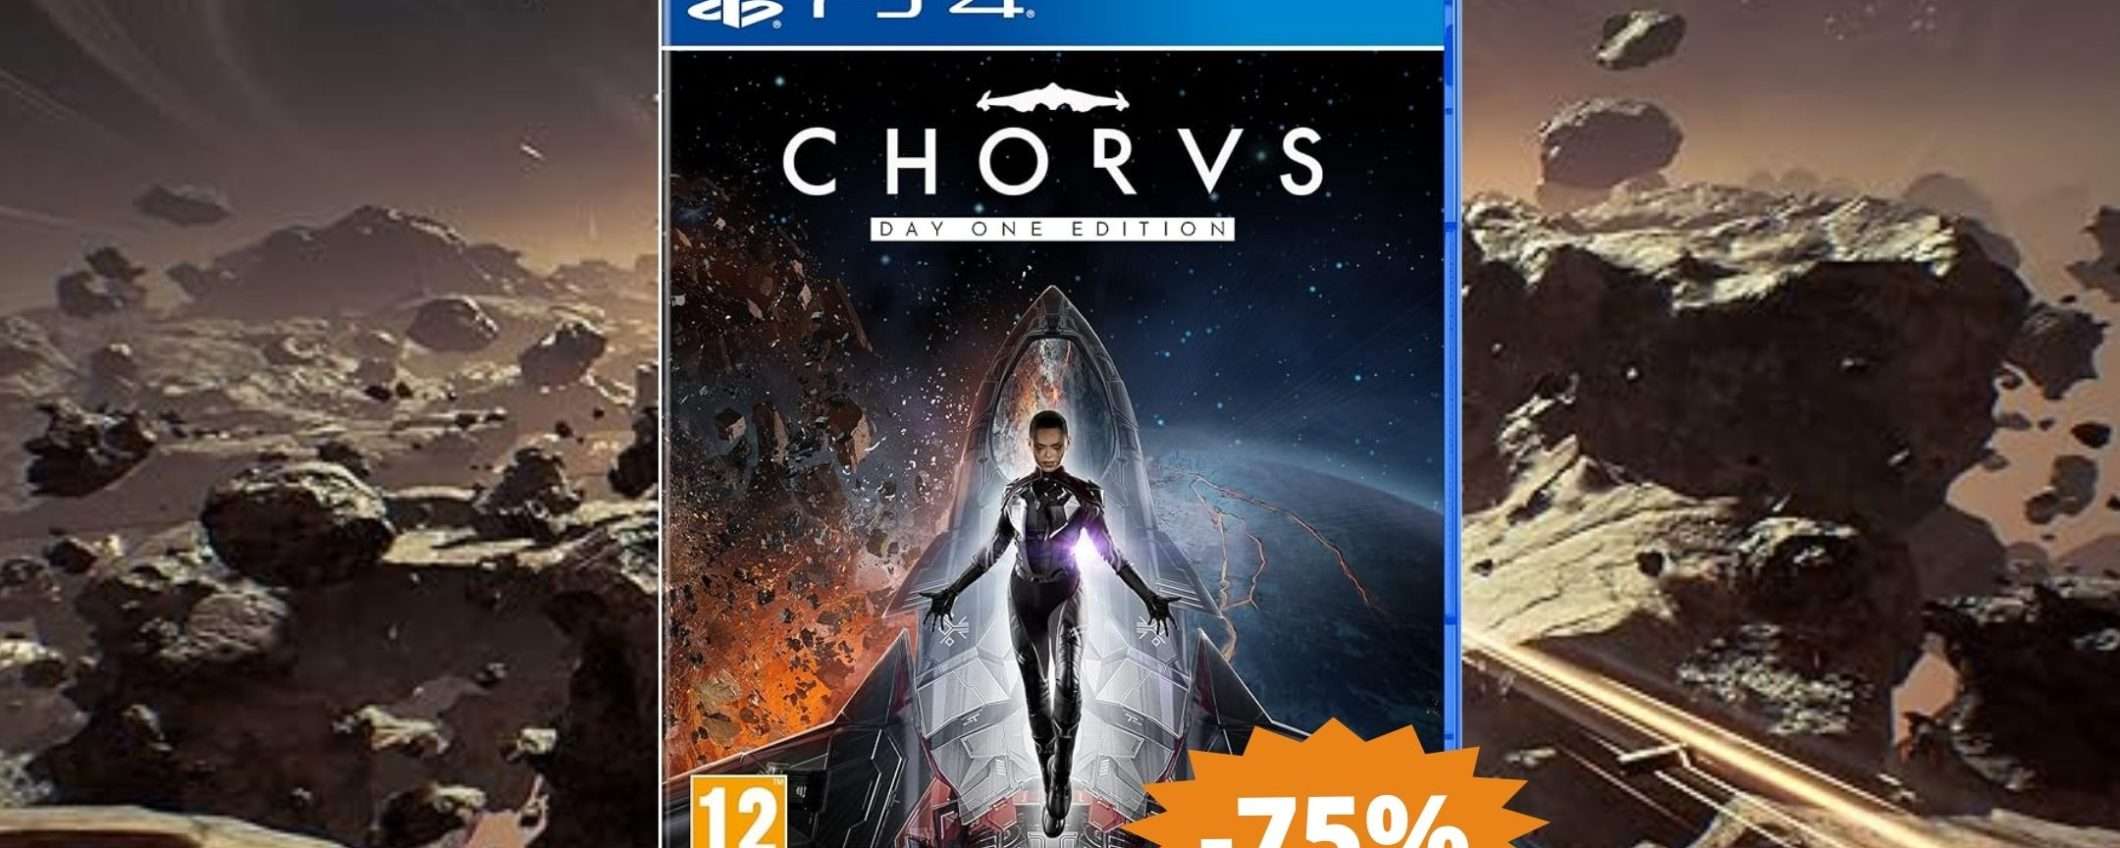 Chorus Day One Edition per PS4: CROLLO del prezzo su Amazon